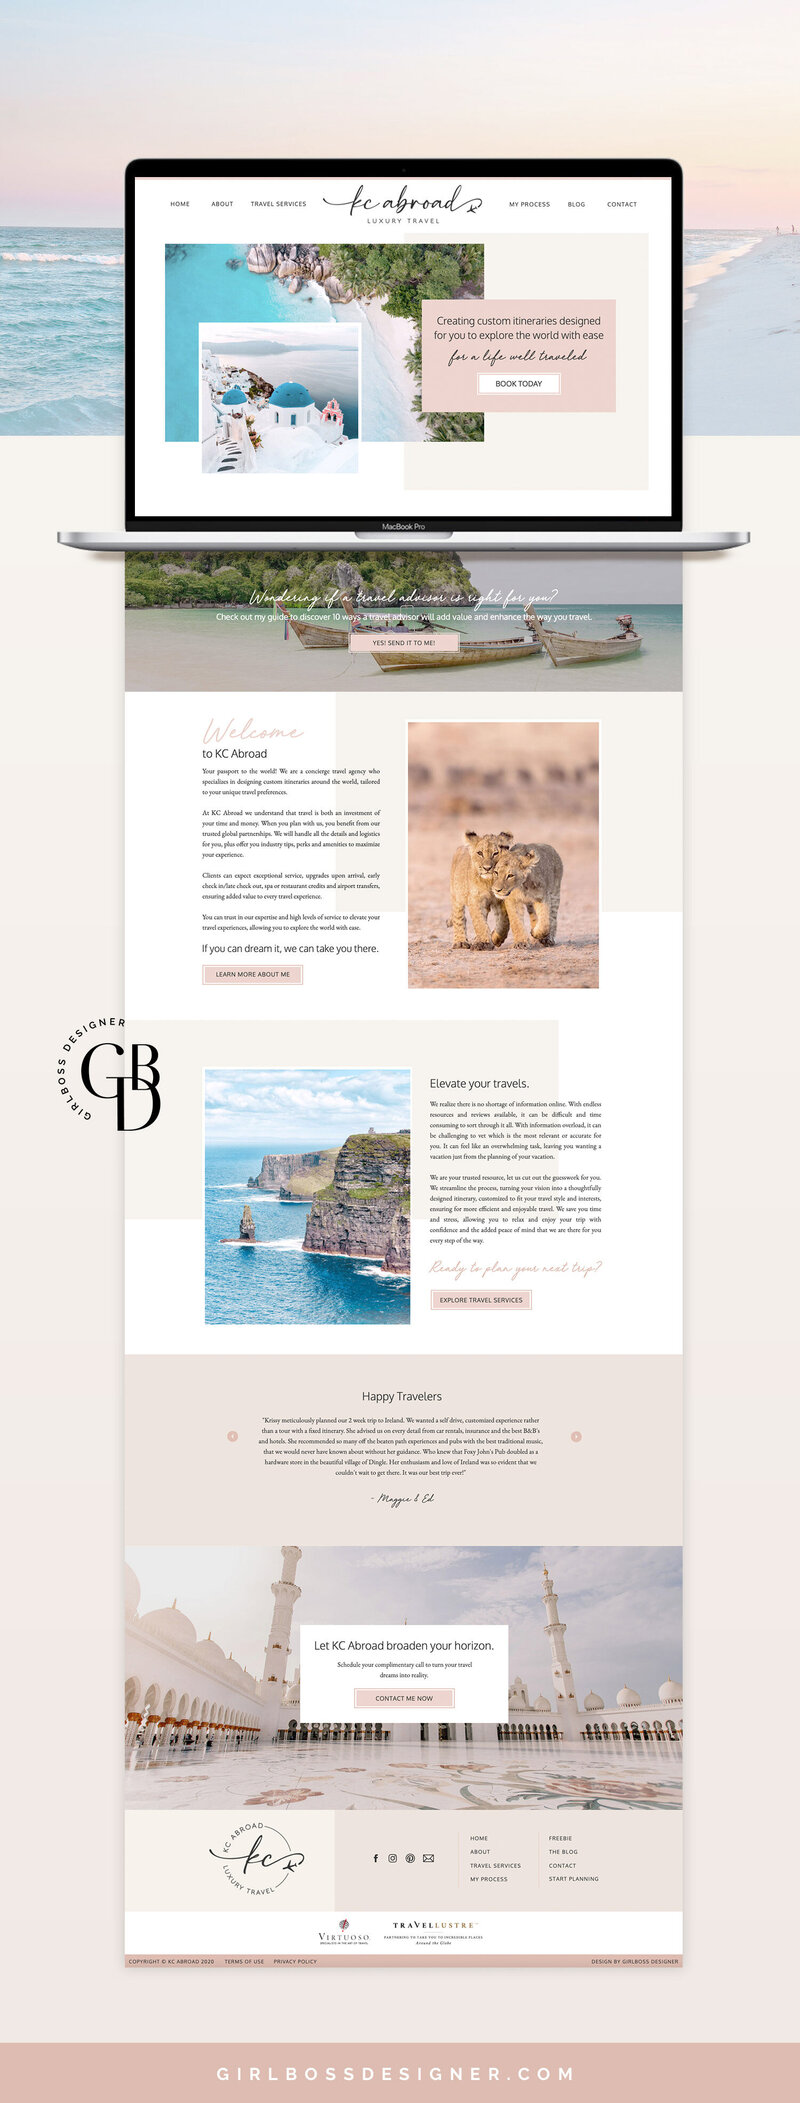 Girlboss-Designer-KCAbroad-Travel-Advisor-Website-Design-1